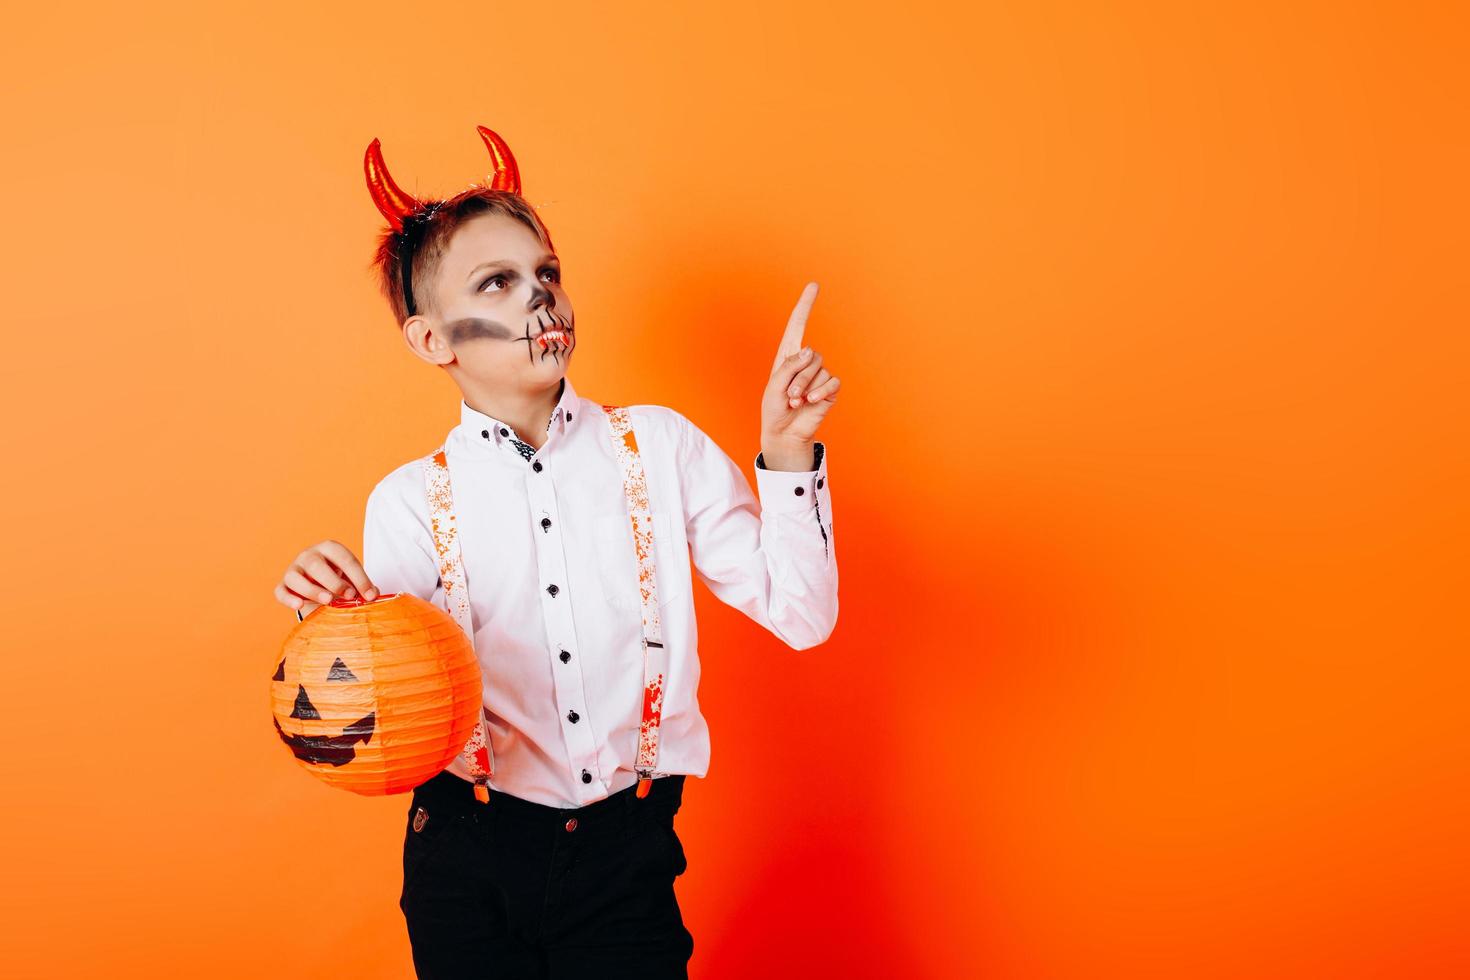 rapaz com maquiagem de máscaras de diabo segurando uma abóbora e apontando para cima. conceito de halloween foto